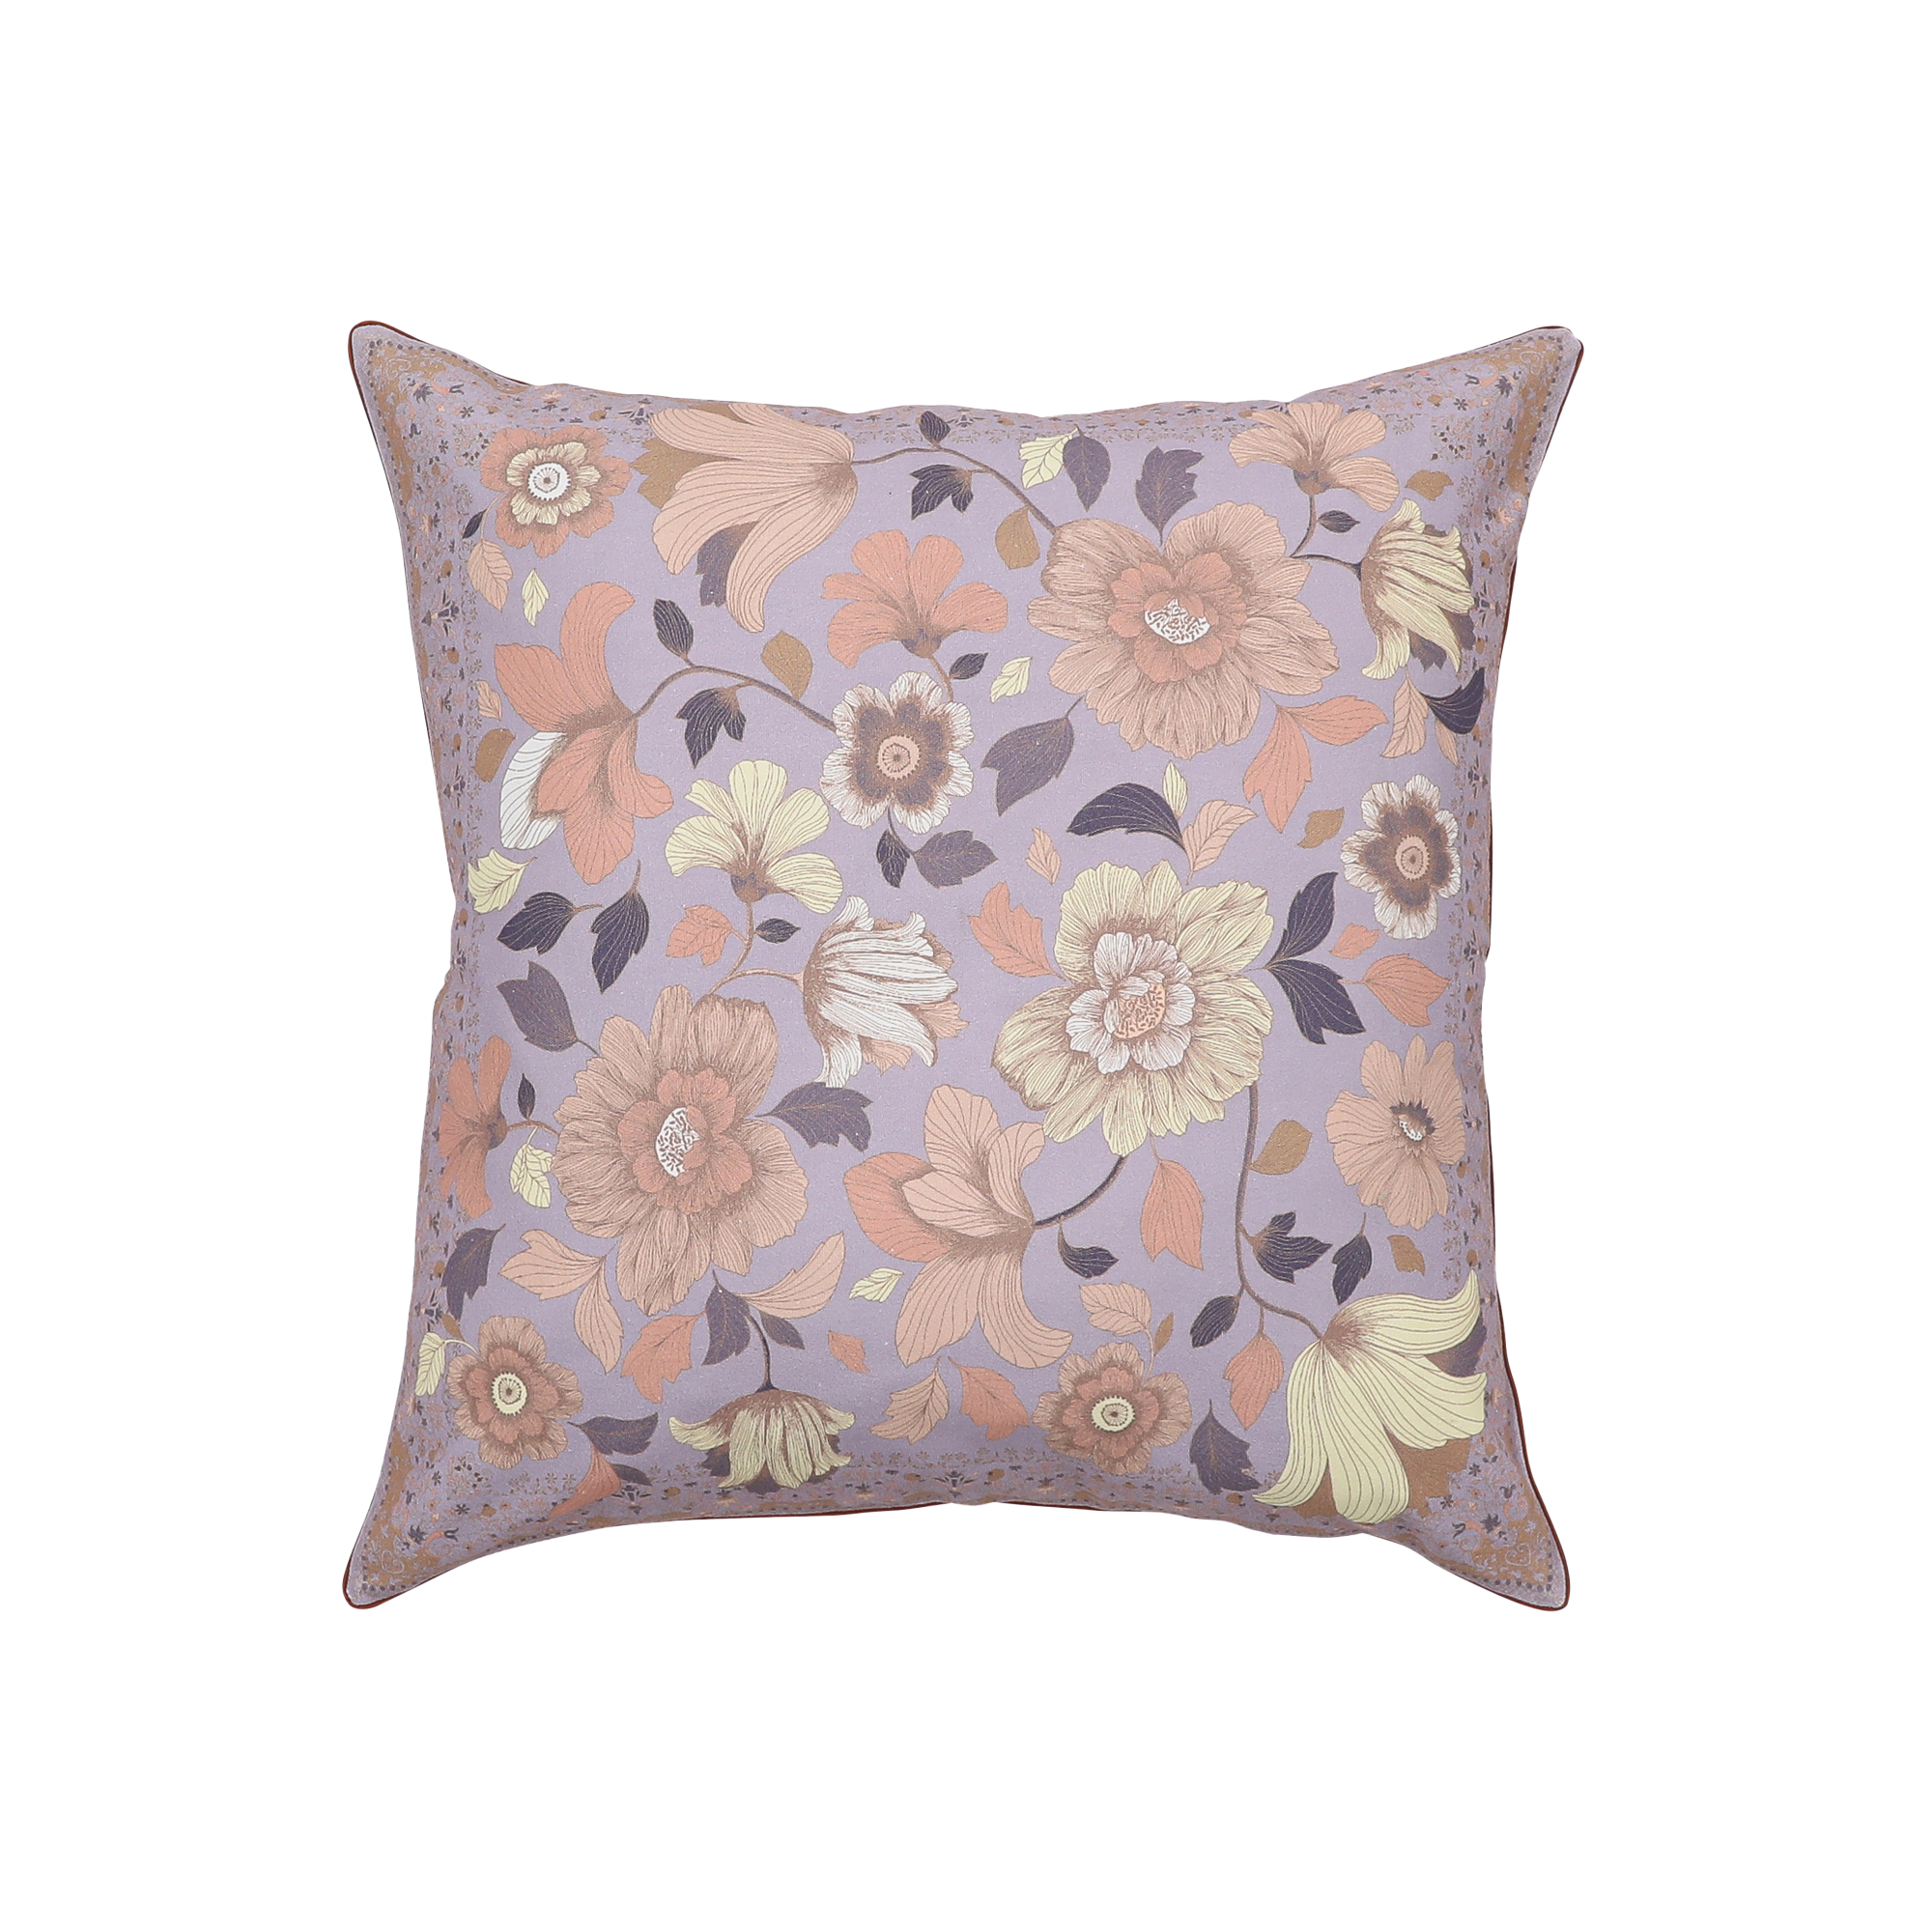 Grande Fleur Cushion Cover Lilac